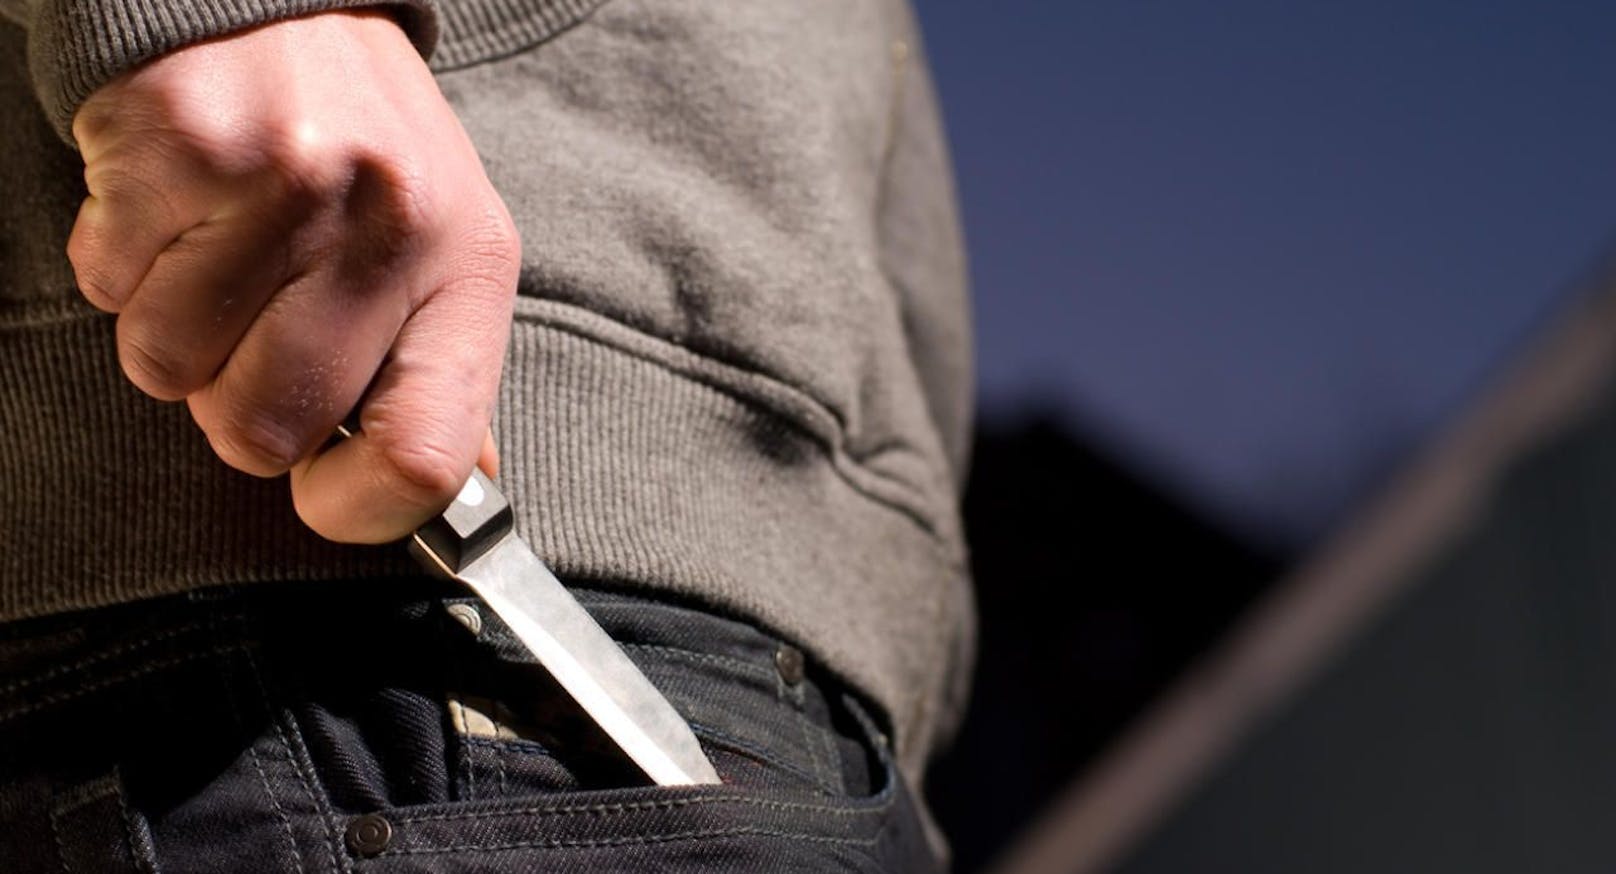 Ein bislang unbekannter Täter bedrohte eine 22-jährige Frau in der Welser Innenstadt mit einem Messer. (Symbolbild)